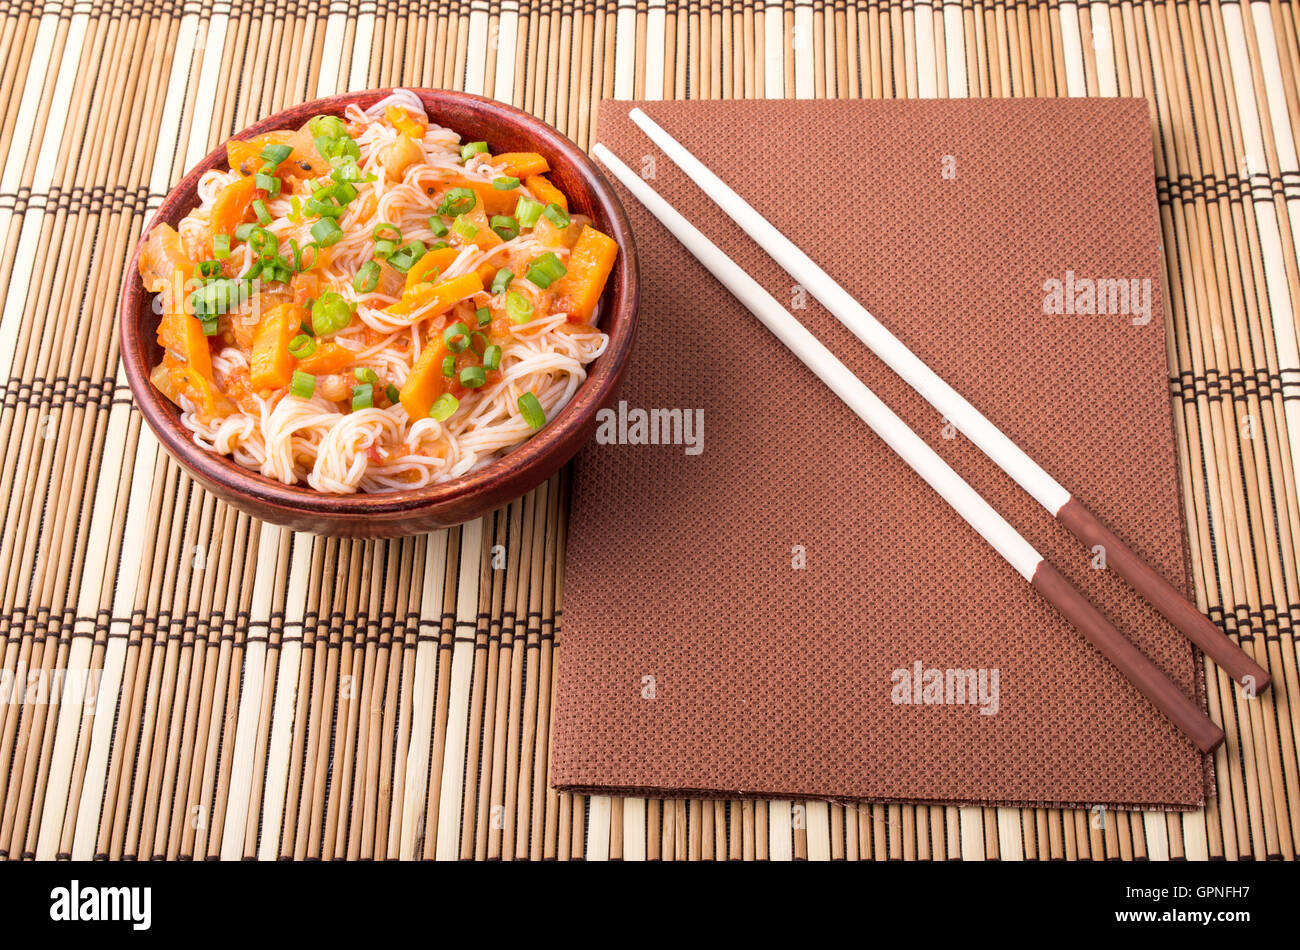 Vue de dessus d'un bol de nouilles de riz asiatiques et condiments dans un petit bol en bois sur un tapis à rayures Banque D'Images